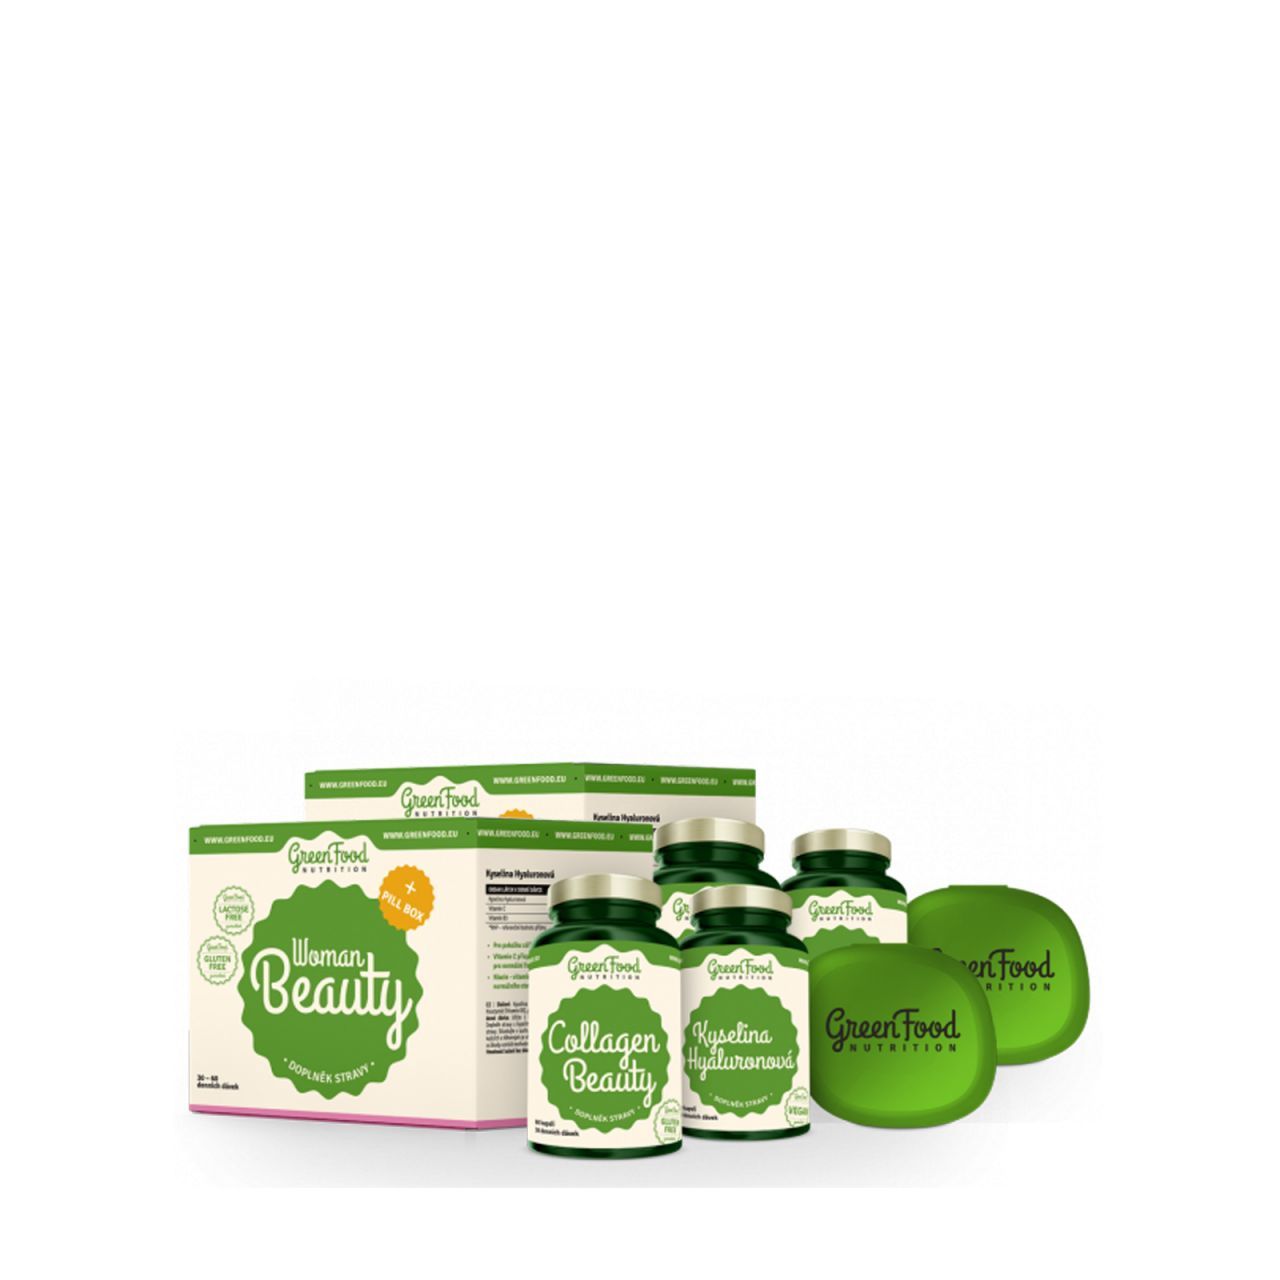 Női szépségformula csomag, GreenFood Nutrition Woman Beauty Box, 2 csomag